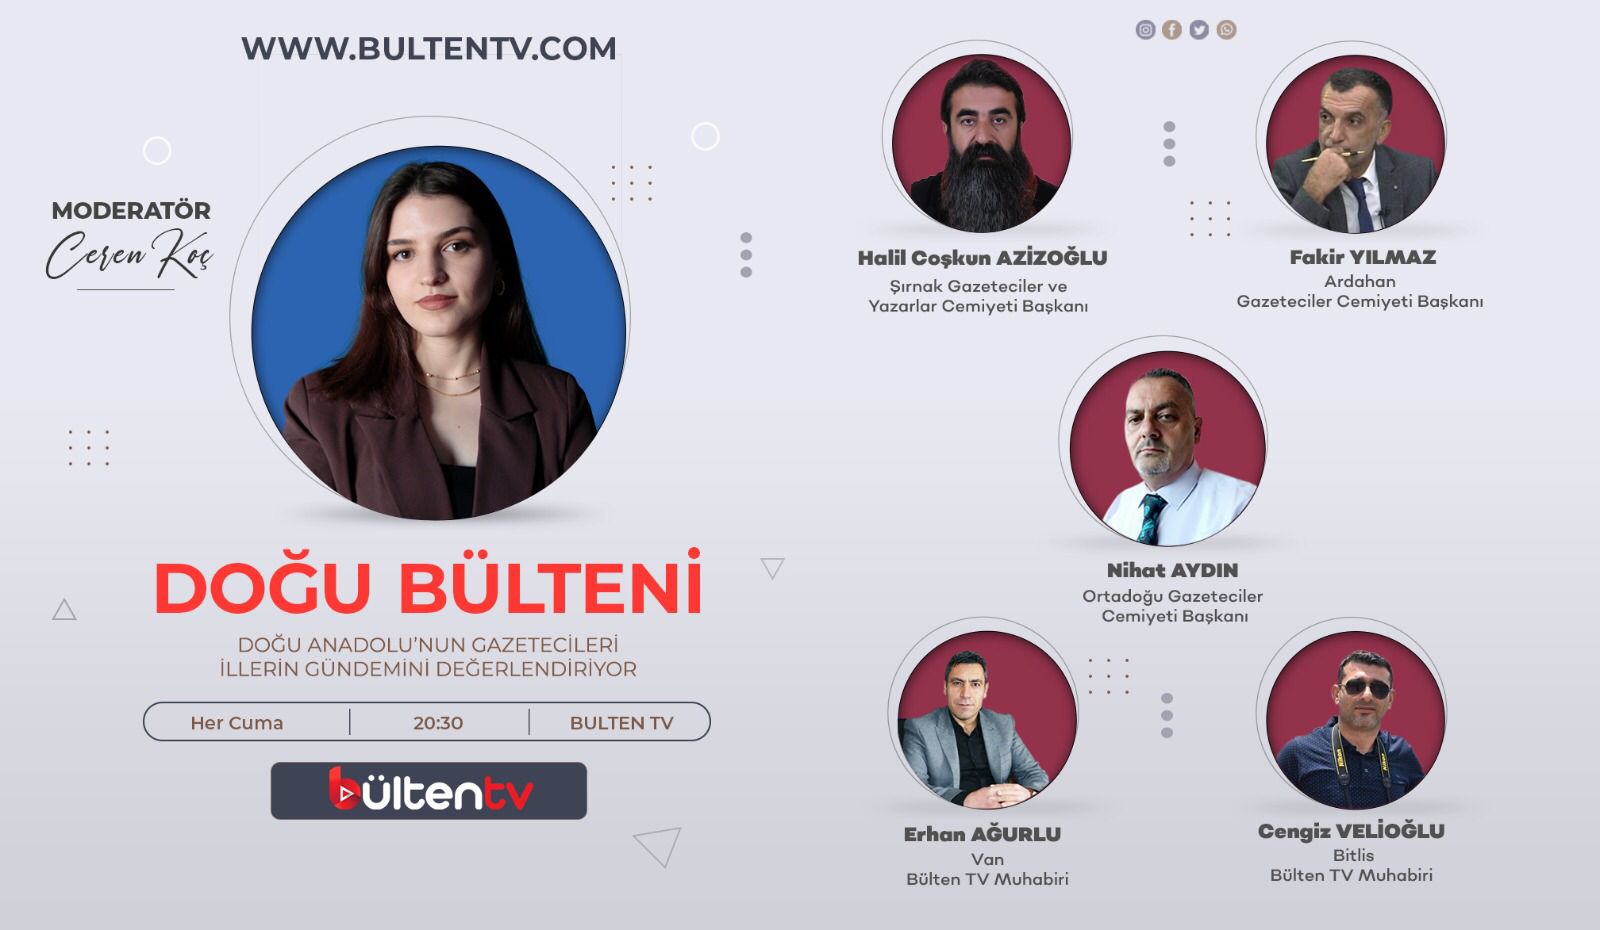 OGC Başkanı Bülent TV’de Nihat Aydın gündemi değerlendirecek